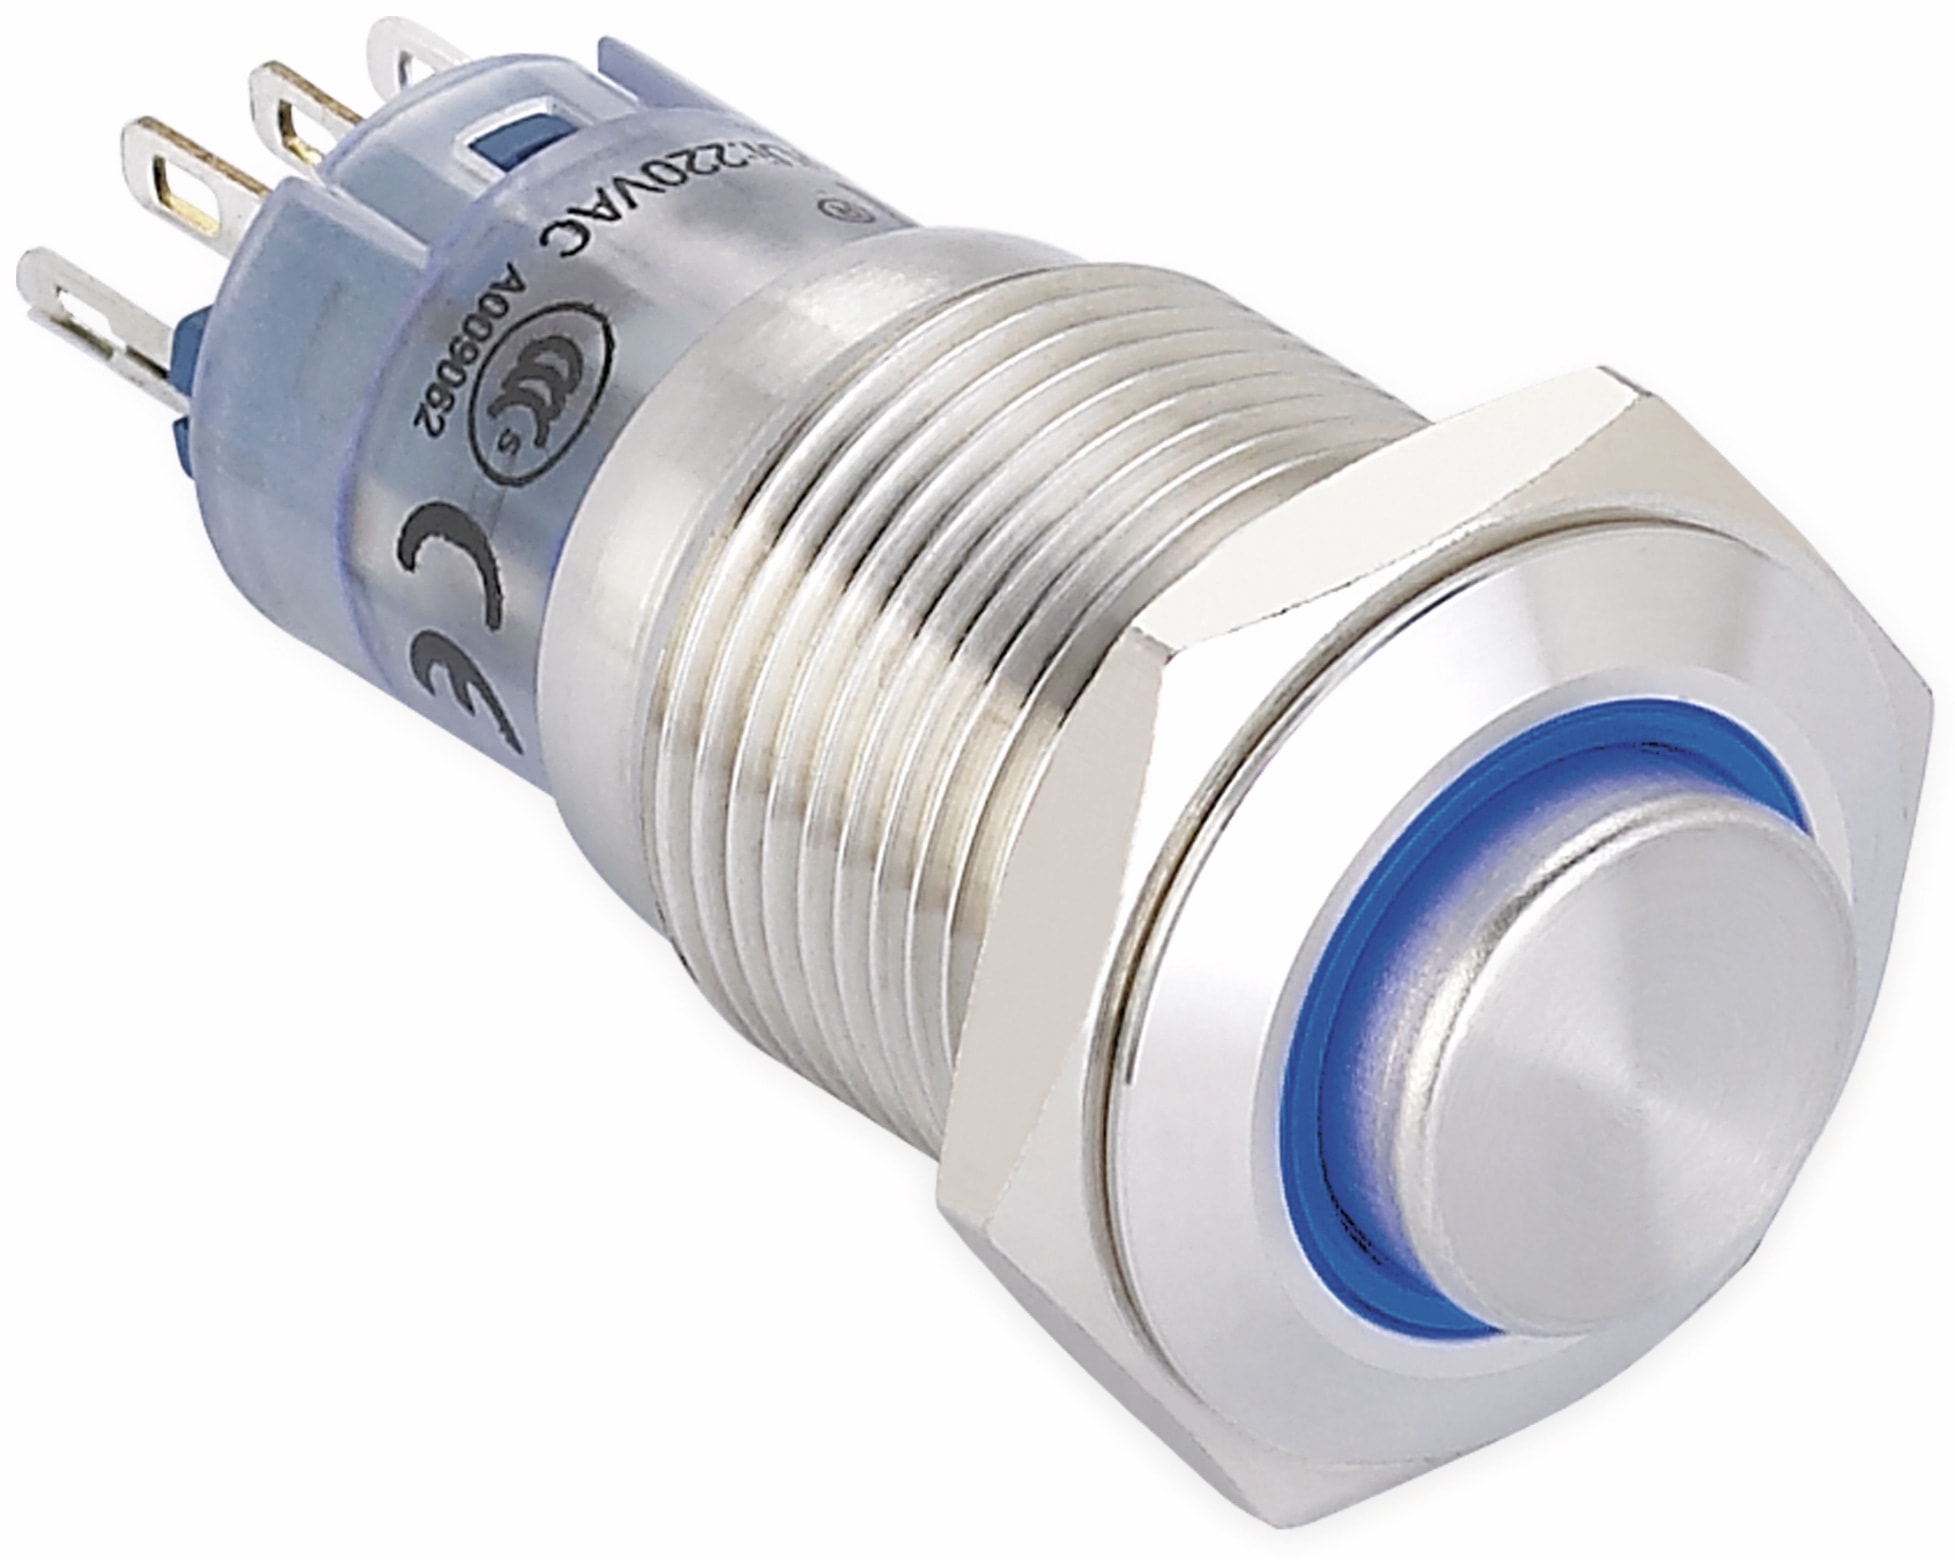 ONPOW Schalter, 24 V/DC, 1x Off/(On), Beleuchtung blau, Lötanschluss, erhaben rund, Edelstahl, 16 mm